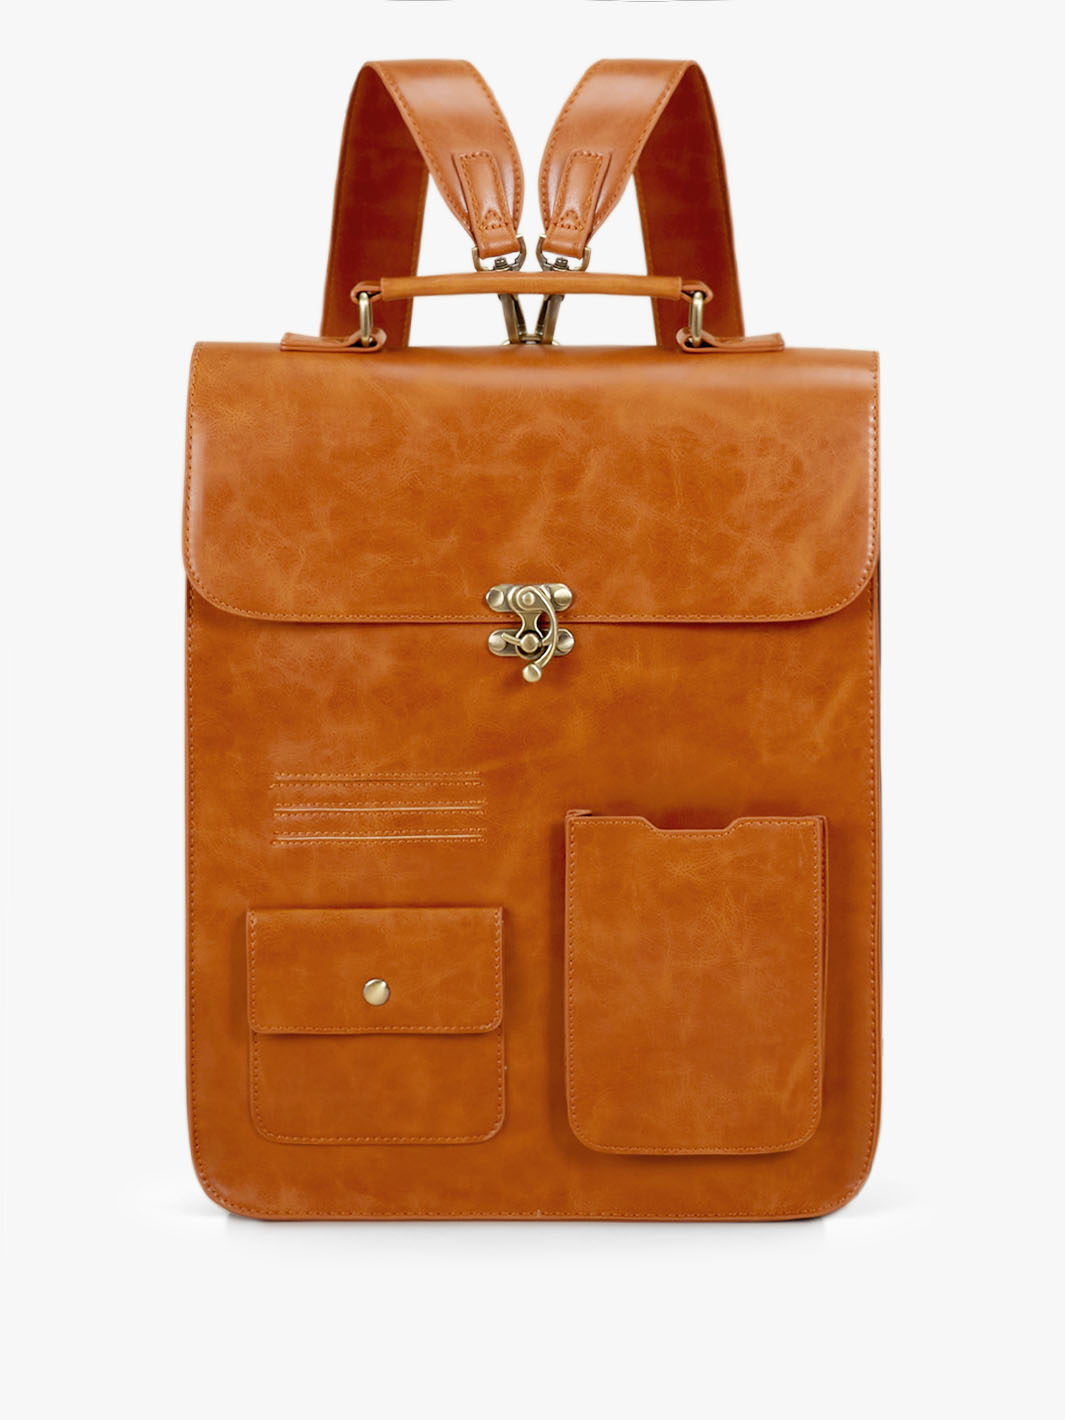 Leather Orange Brown Backpack Handbag for Women: Ecosusi Vintage Dusk Backpack